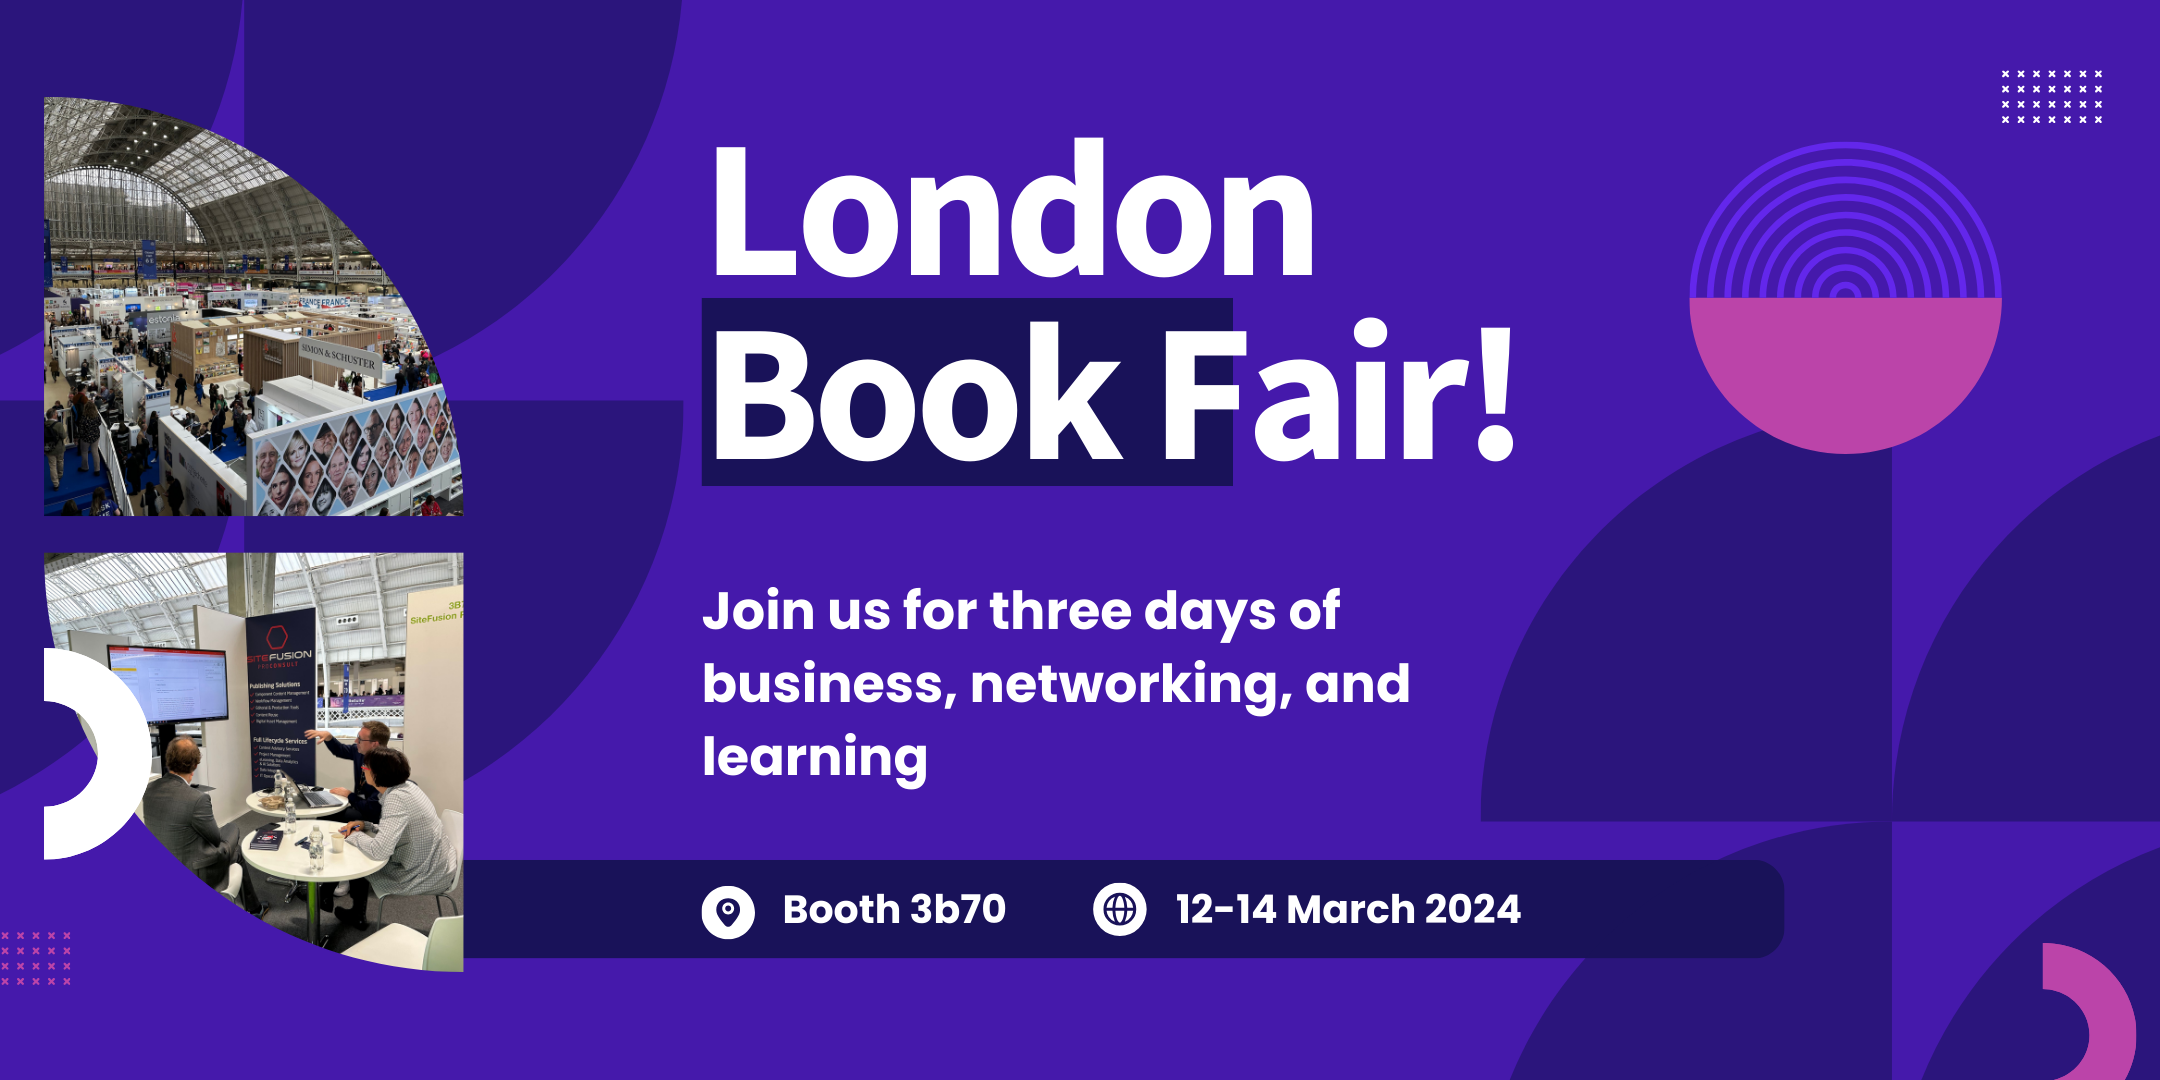 London Book Fair 